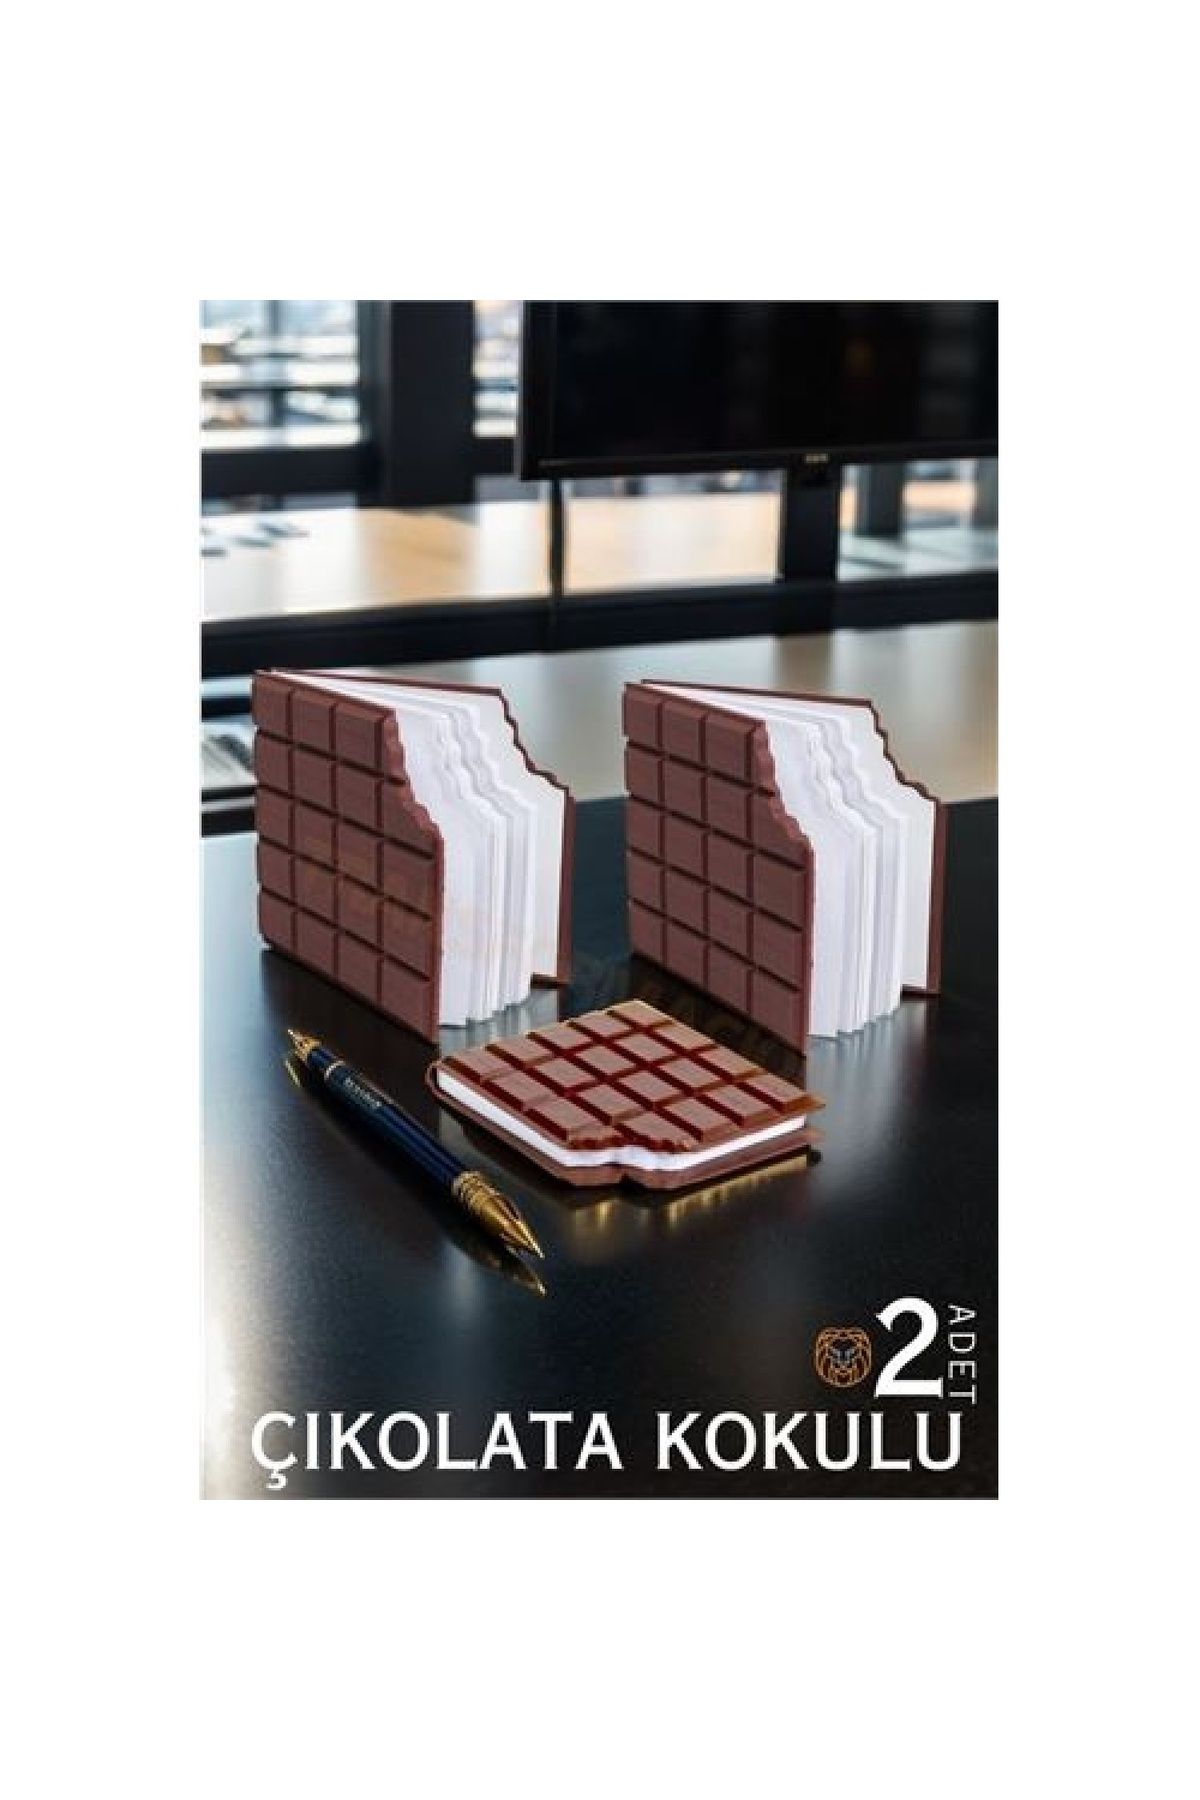 ENSAR GİYİM ShopZum Çikolata Not Defteri 2 ADET 719989